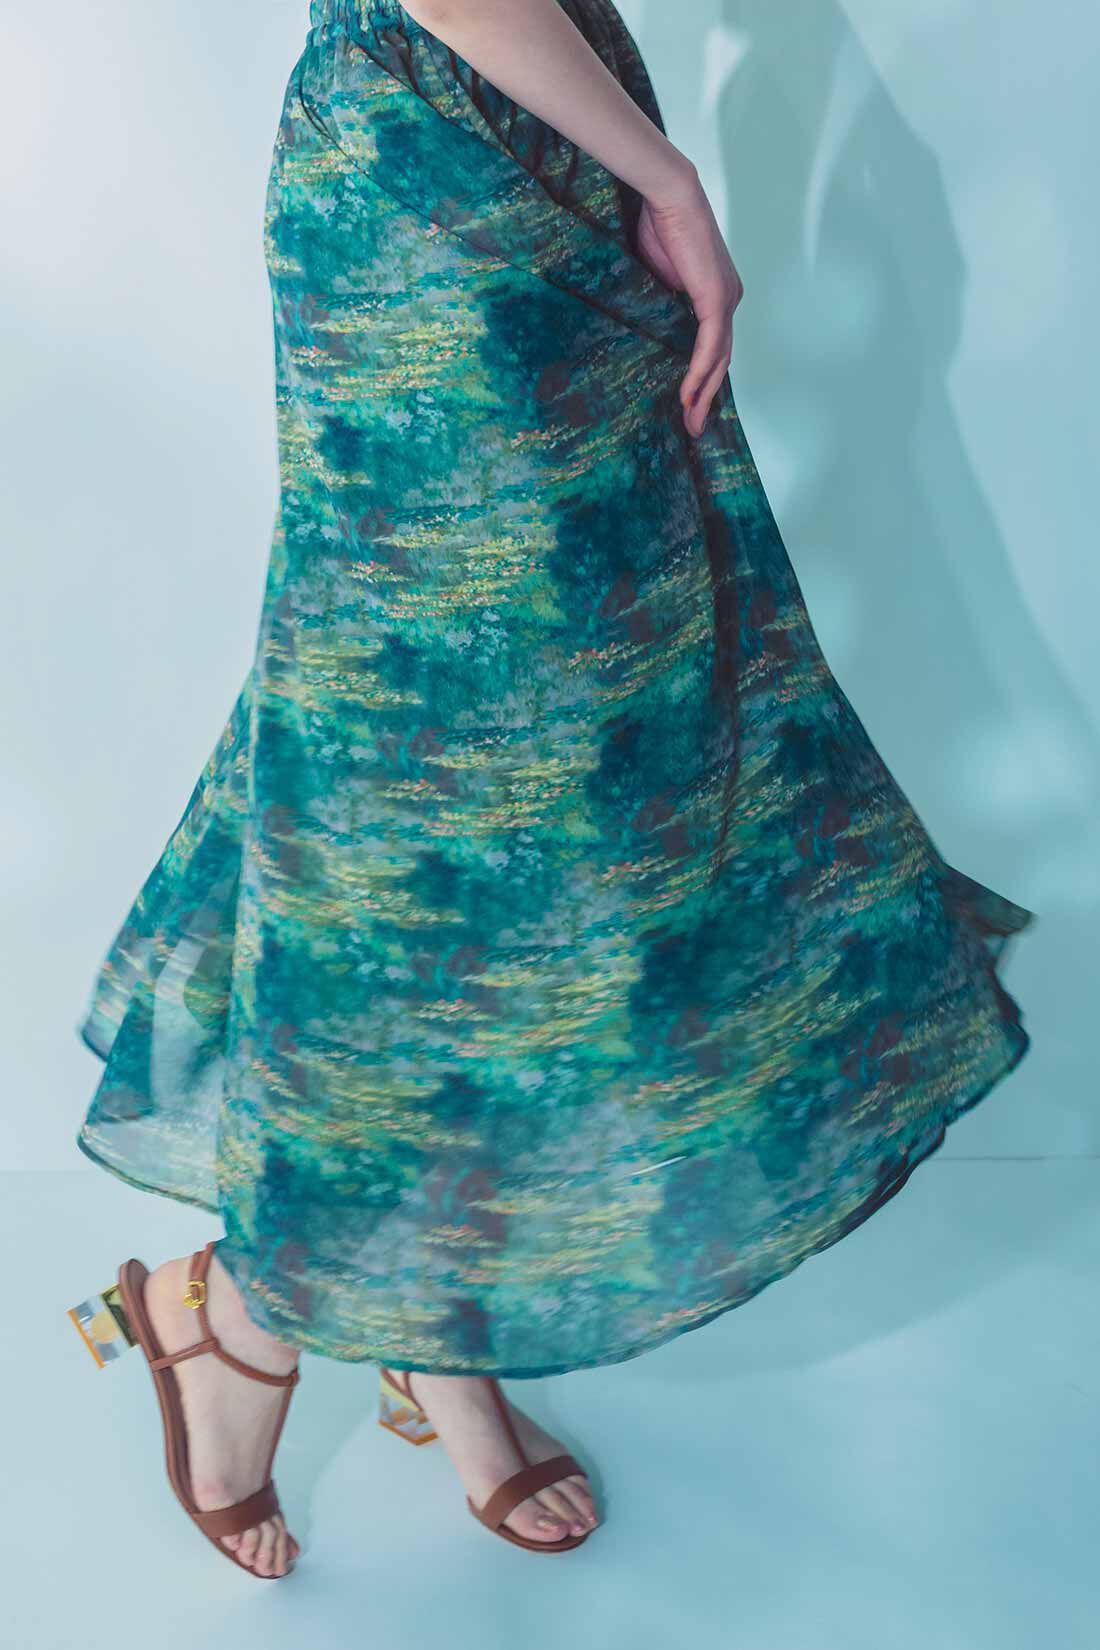 IEDIT|IEDIT[イディット]　モネの睡蓮をまとうシフォンスカート〈ブルー〉|※着用イメージです。お届けするカラーとは異なります。